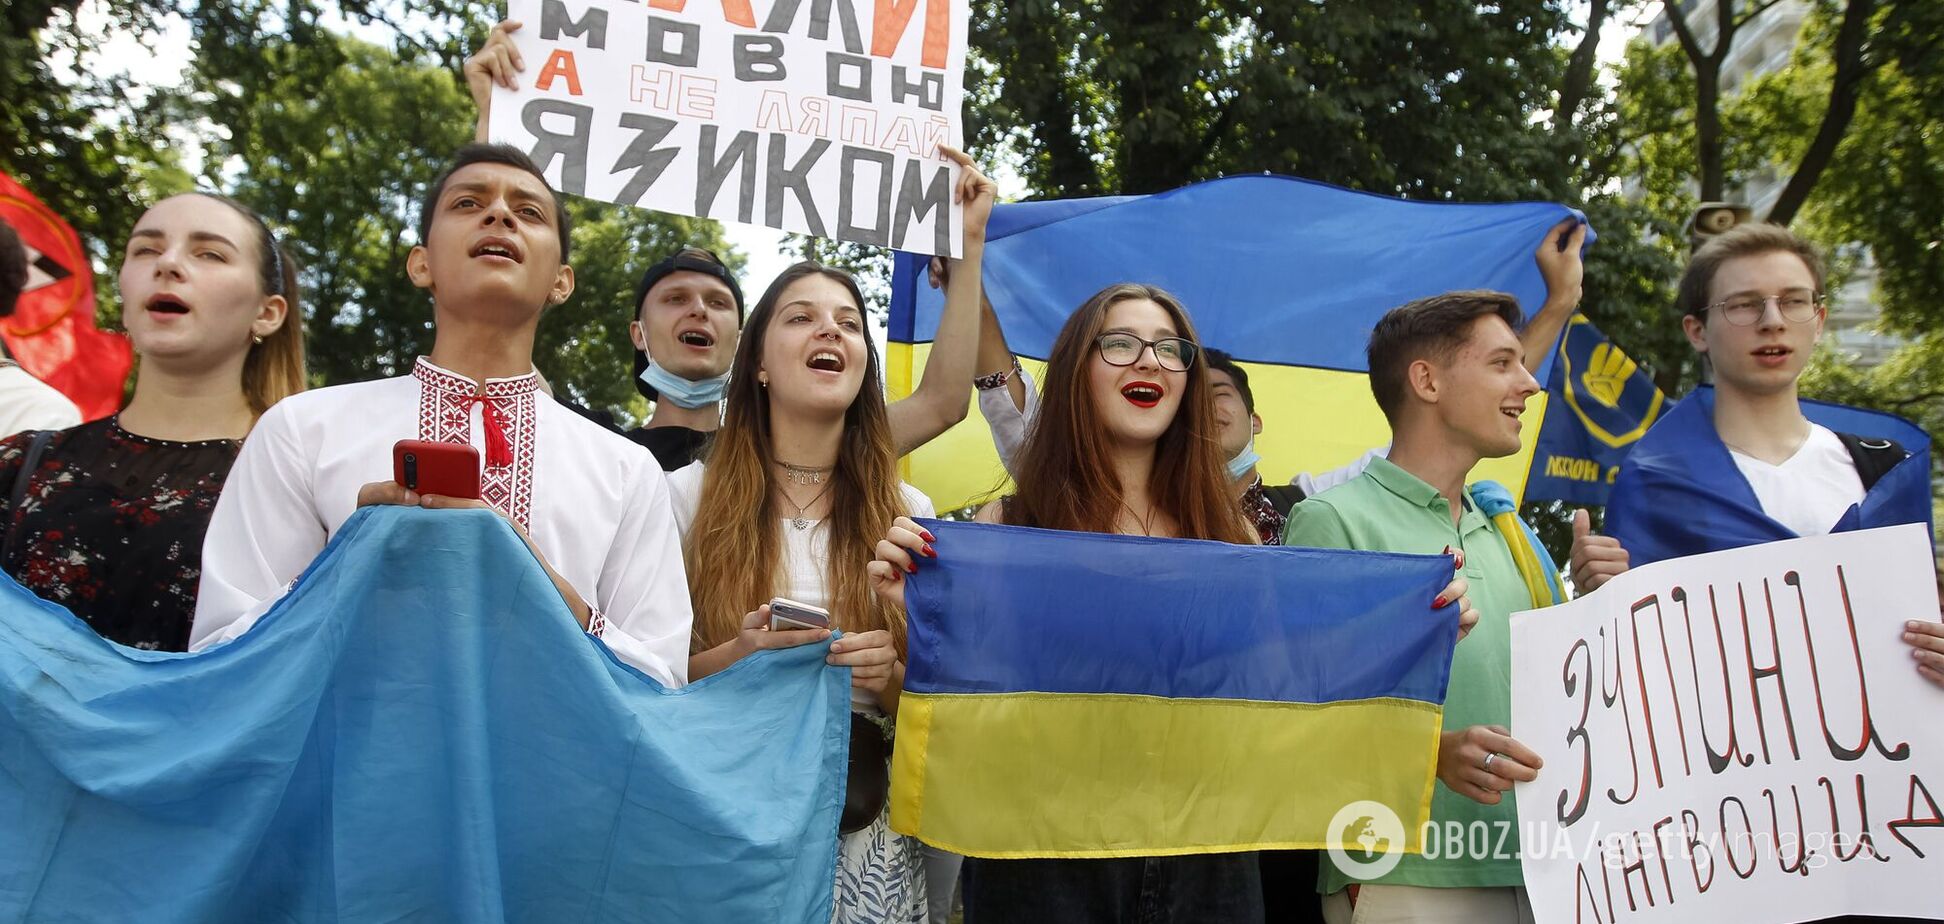 Абсолютное большинство украинцев выступают за единственный госязык